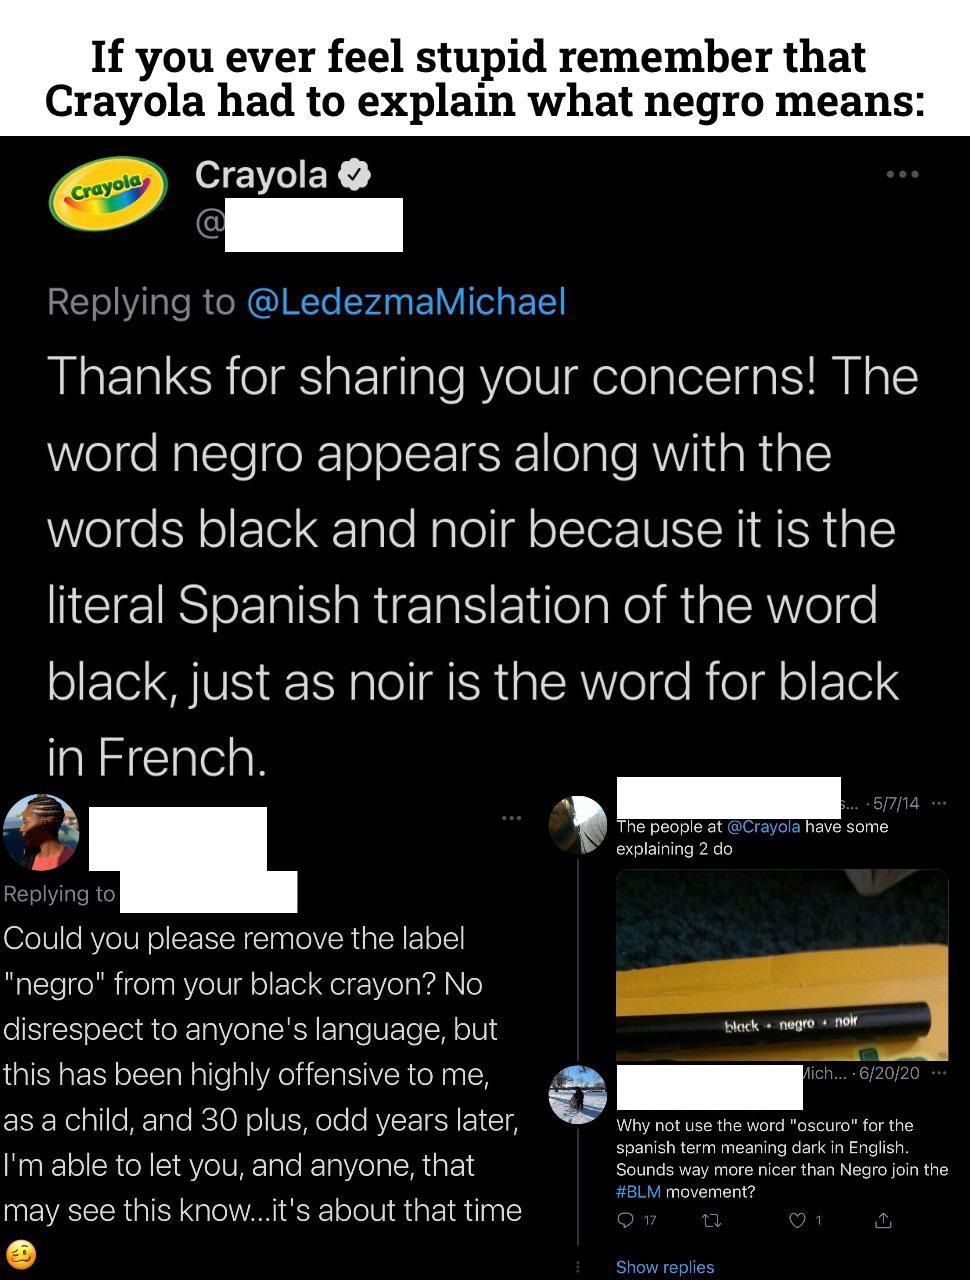 Hmm yes cancel a language